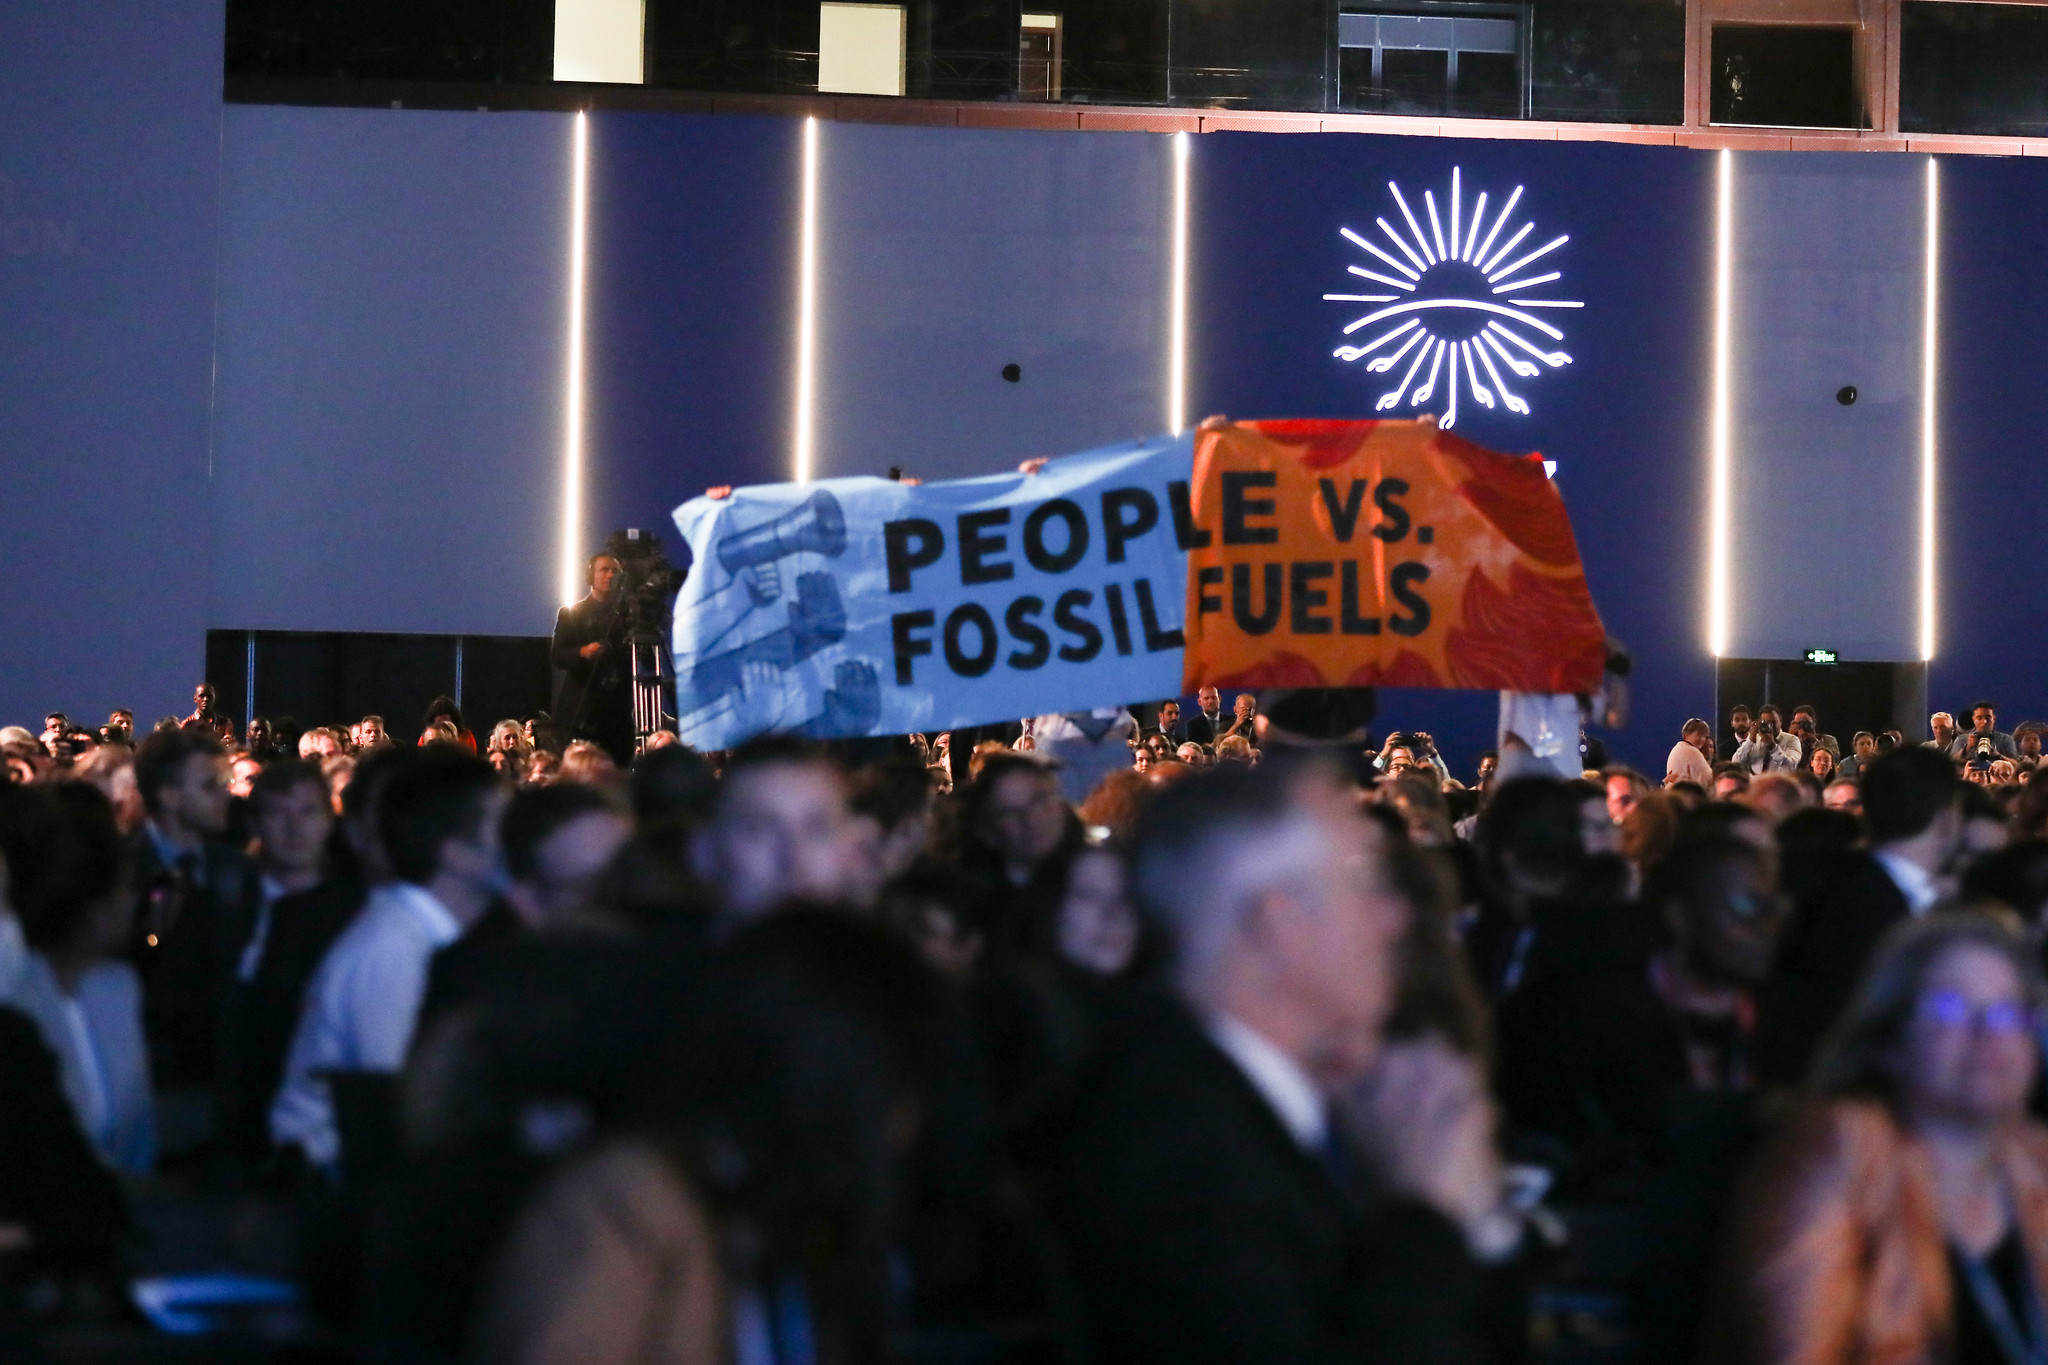 Crise energética vence ambição climática na COP27. Na imagem: protestos contra fósseis durante discurso de Biden na COP27 (Foto: Kiara Worth/UNFCCC)